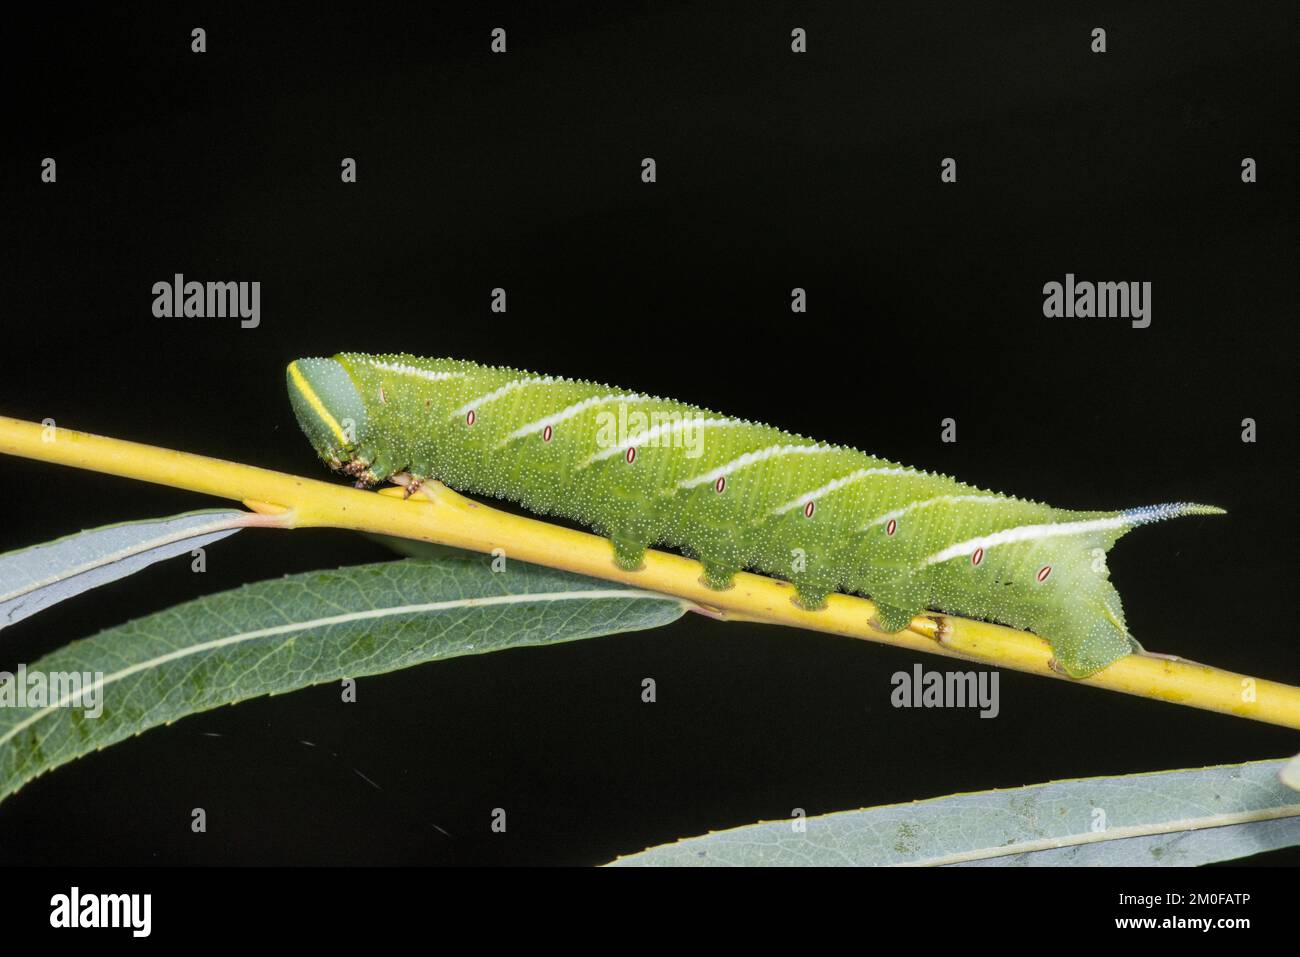 Eyed Hawk-Moth, Eyed Hawkmoth, Hawkmoths Hawk-moths (Smerinthus ocellata, Smerinthus ocellatus), caterpillar, Germany Stock Photo